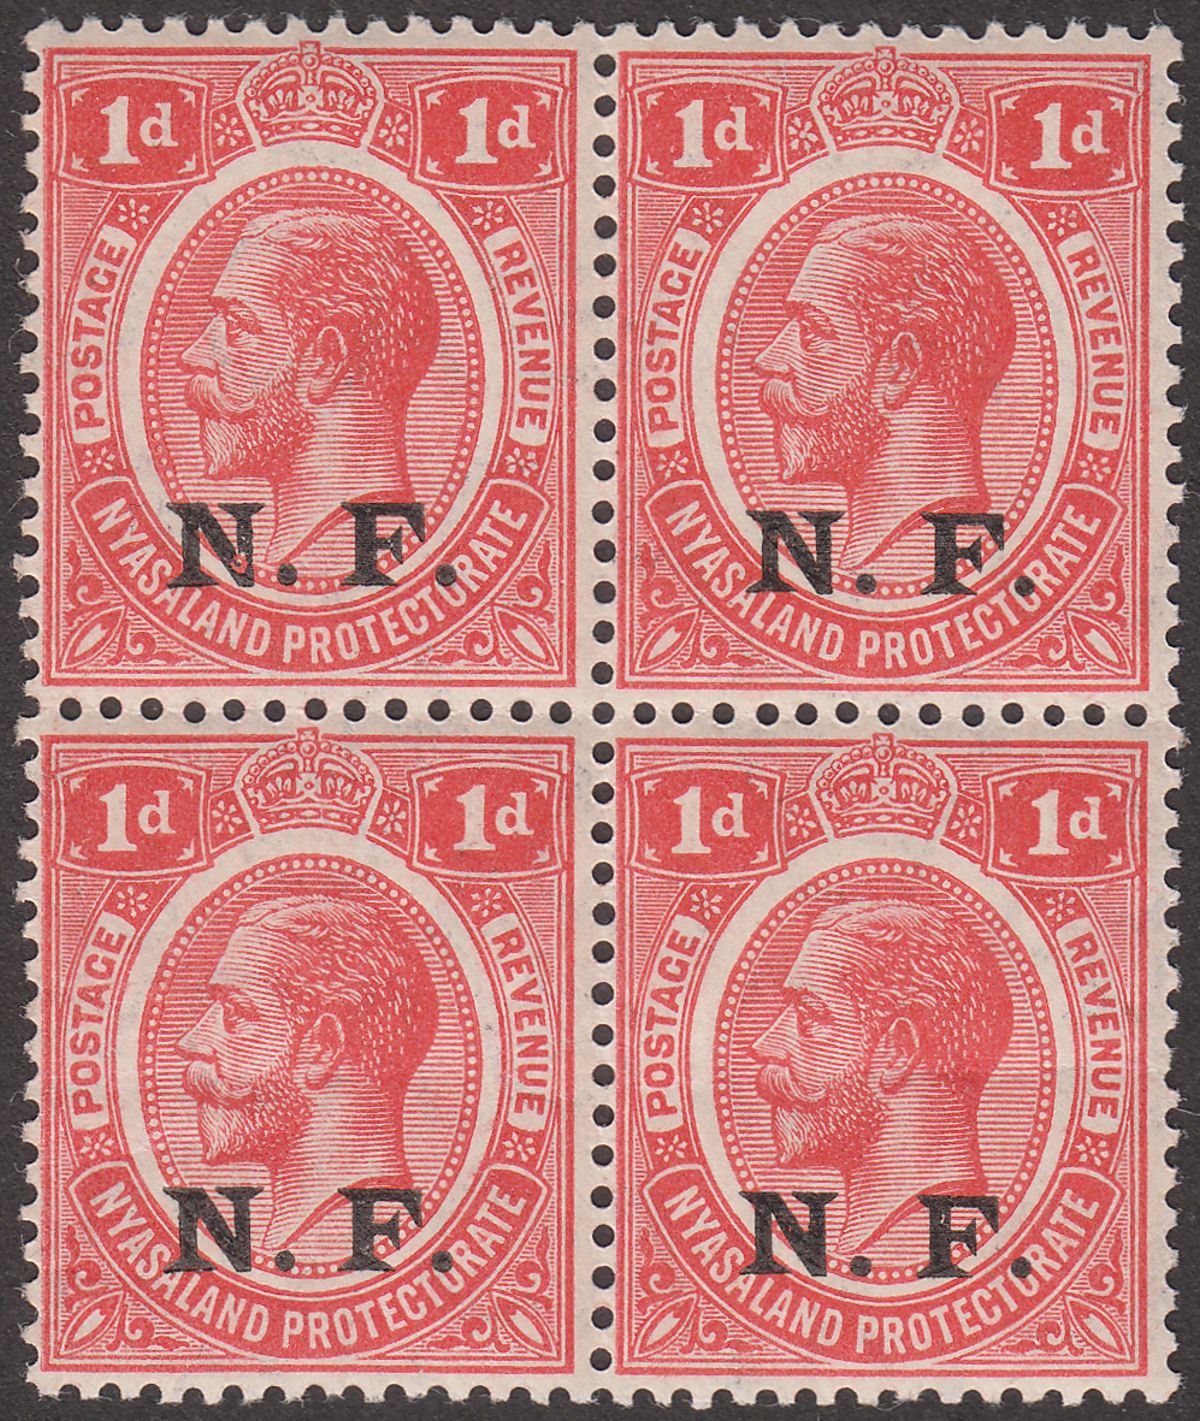 Tanganyika 1916 KGV NF Overprint 1d Block of 4 Mint SG N2 Broken N Variety